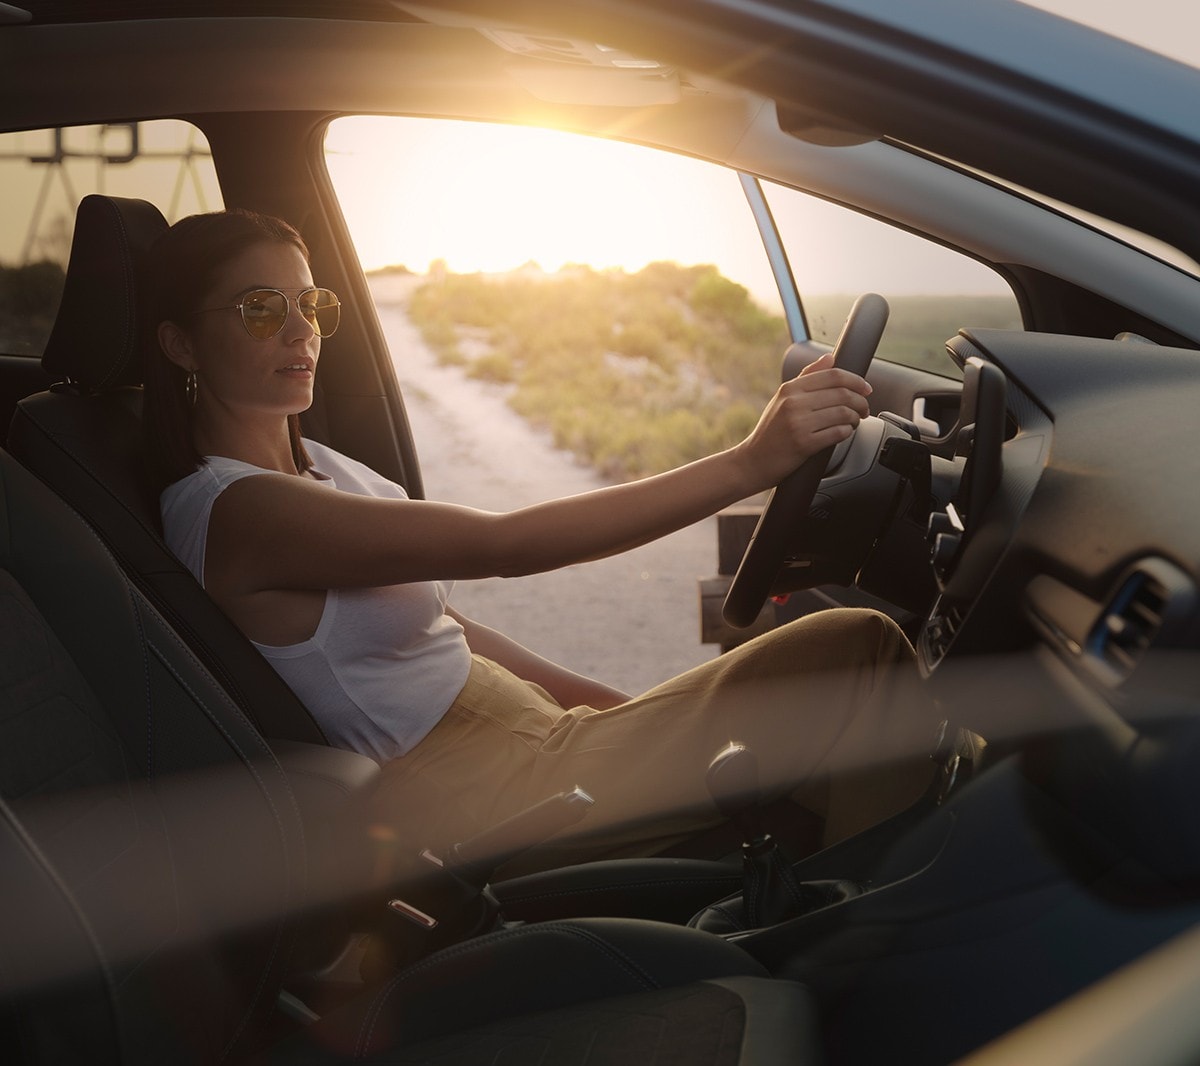 Ford Fiesta Innenraumansicht. Frau sitzt bei geöffneter Fahrertür auf dem Fahrersitz. Im Hintergrund ein Sonnenuntergang.